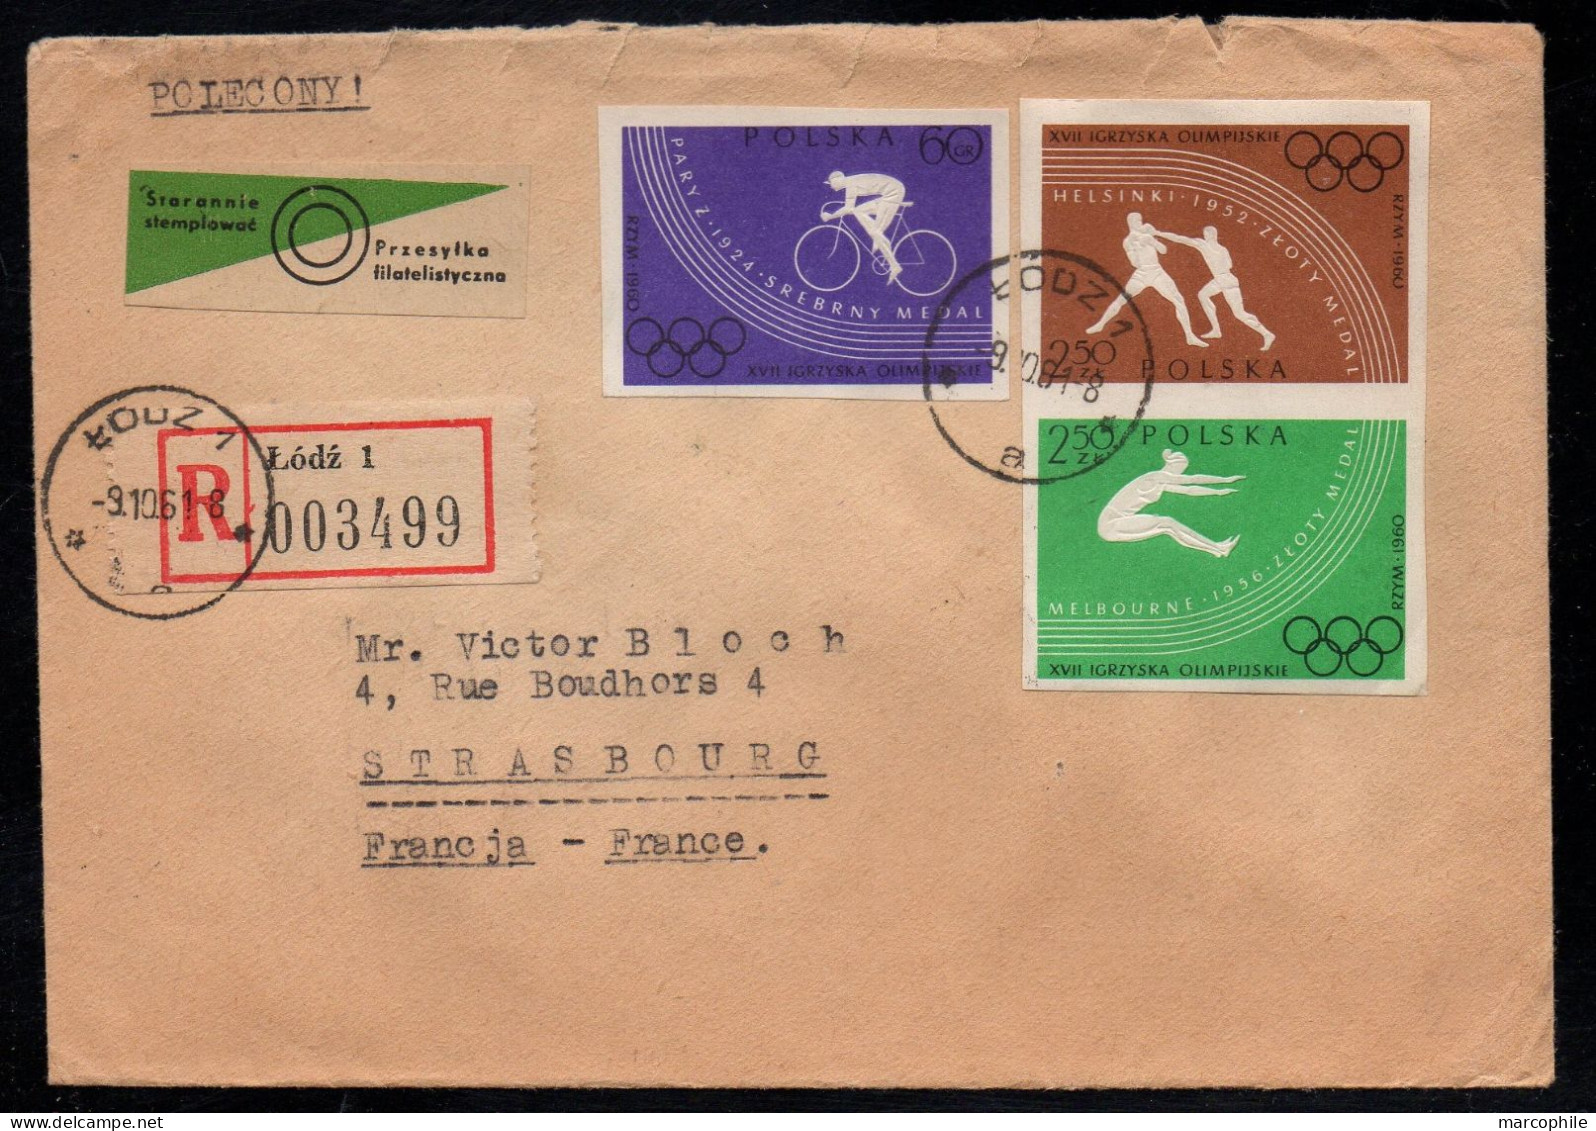 POLOGNE - POLSKA - LODZ - JEUX OLYMPIQUES / 1961 LETTRE RECOMMANDEE POUR STRASBOURG (ref LE3235) - Storia Postale